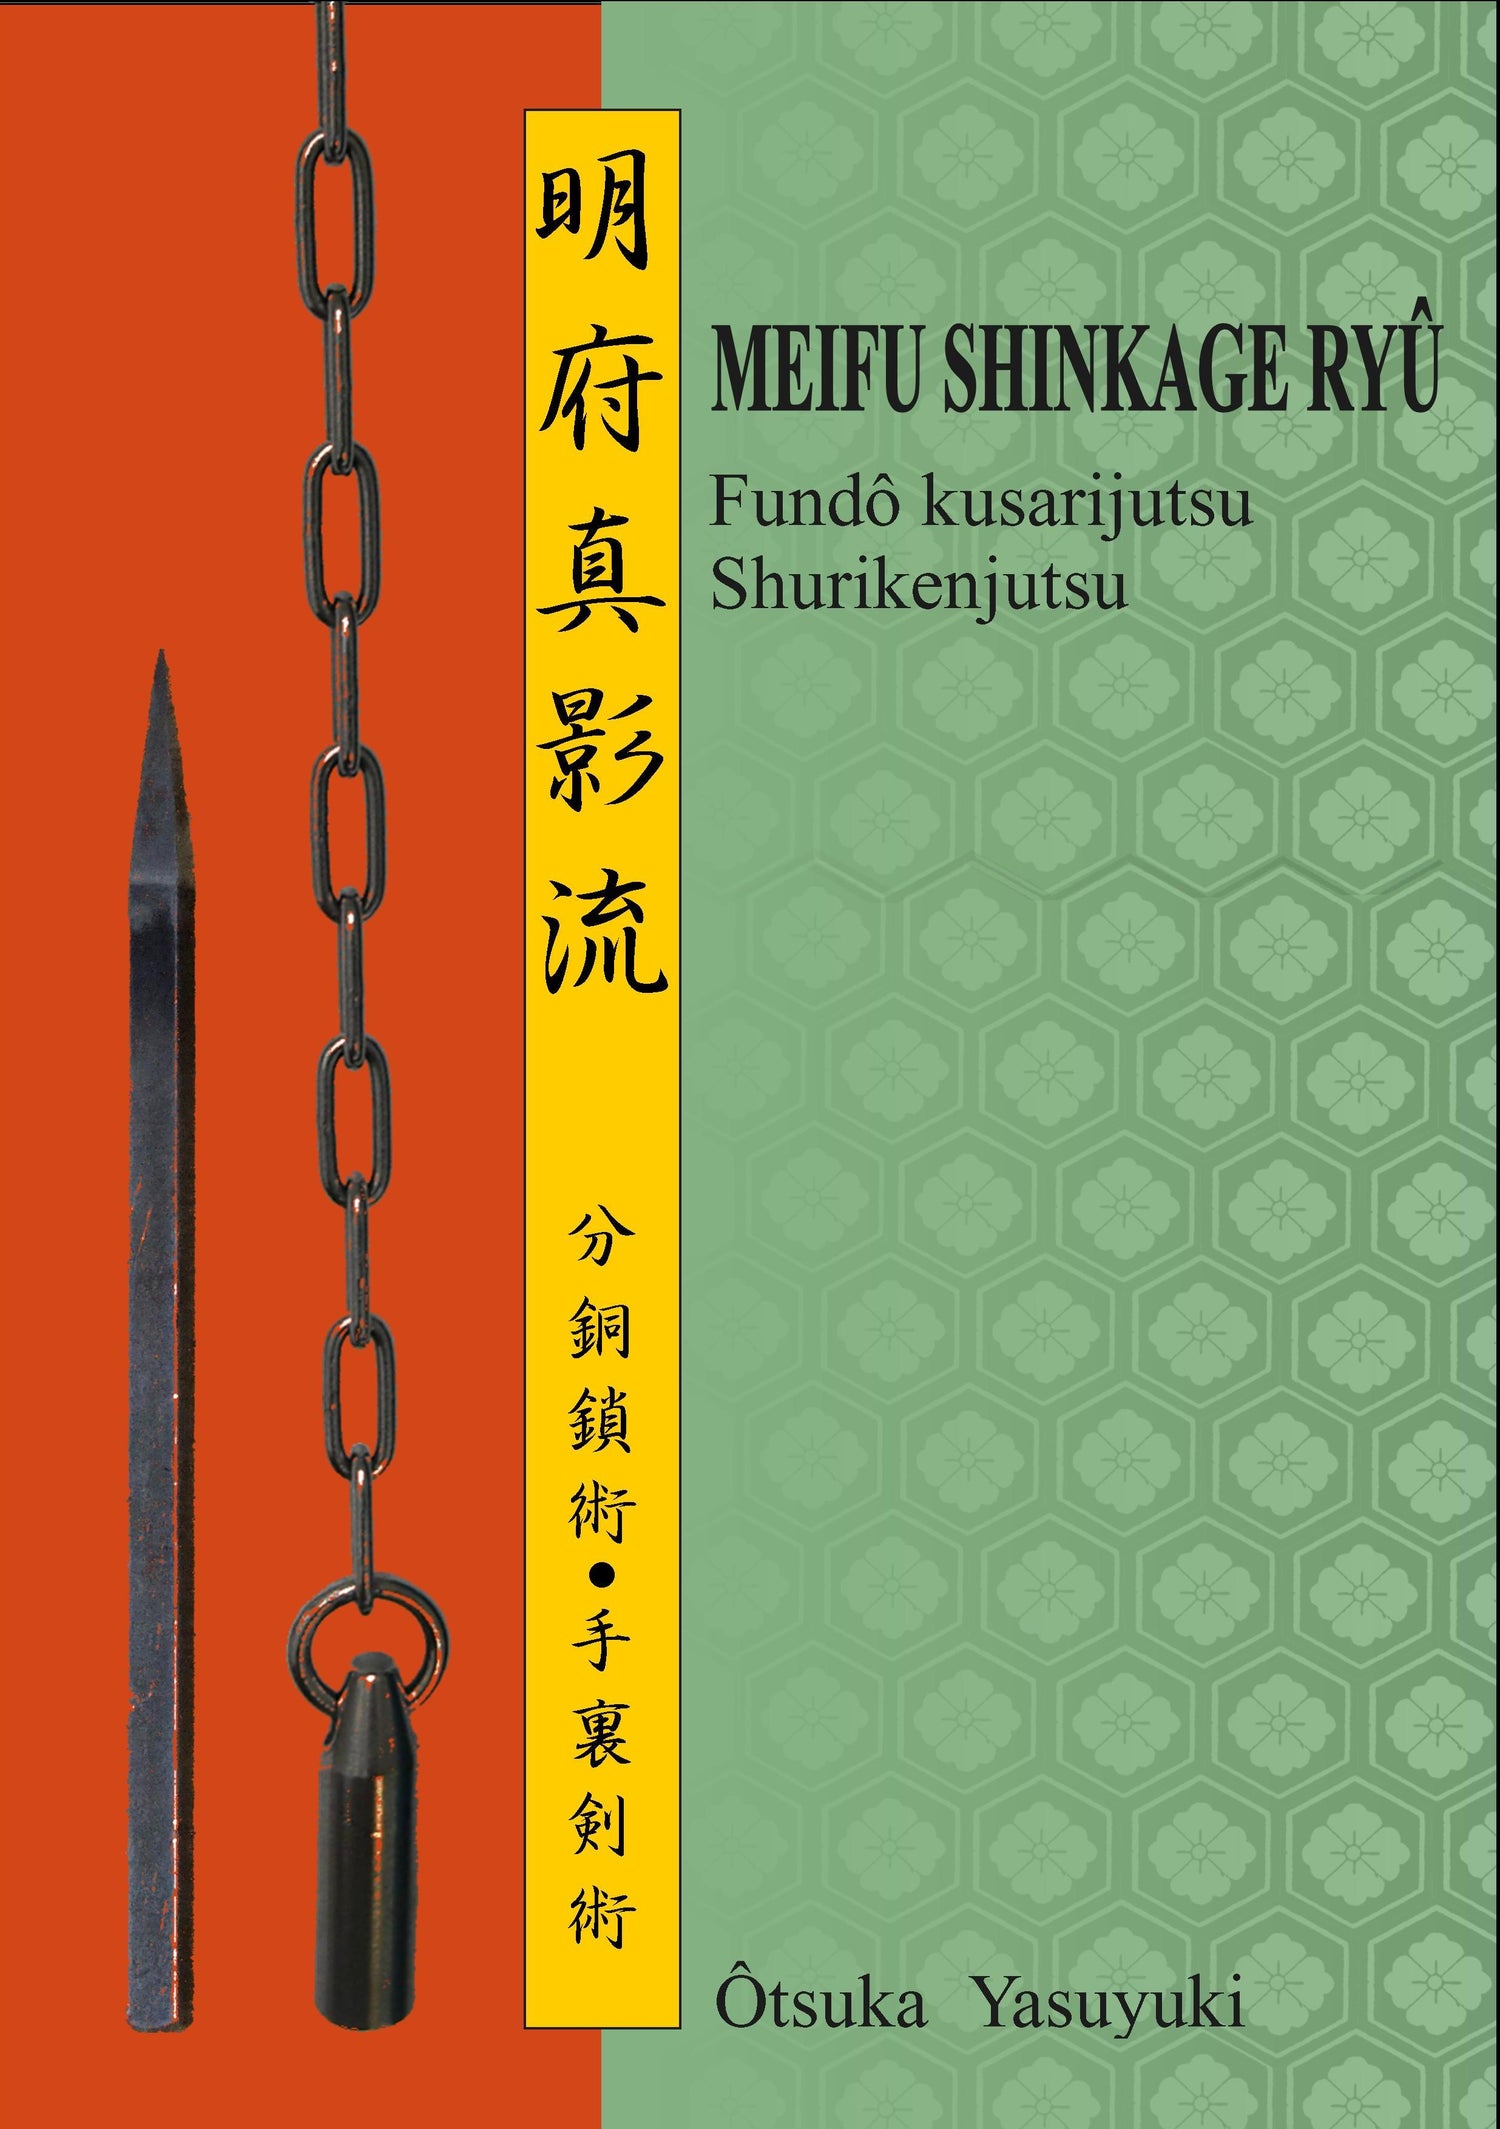 Meifu Shinkage Ryu Shurikenjutsu Book by Yasuyuki Otsuka - Budovideos Inc